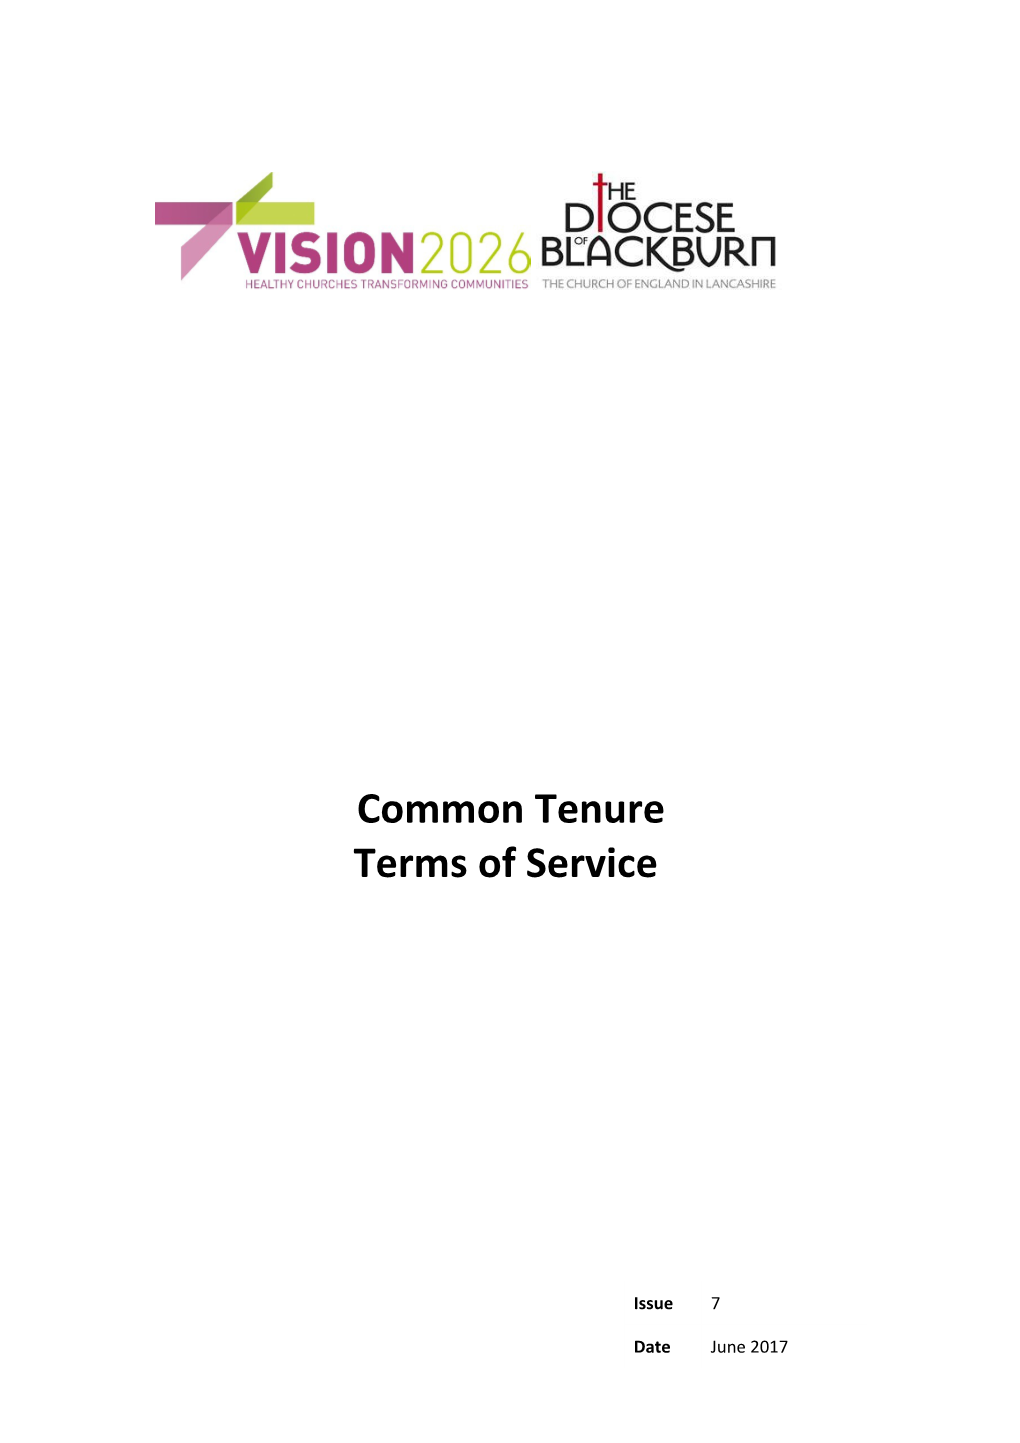 Diocesan Terms of Service Handbook